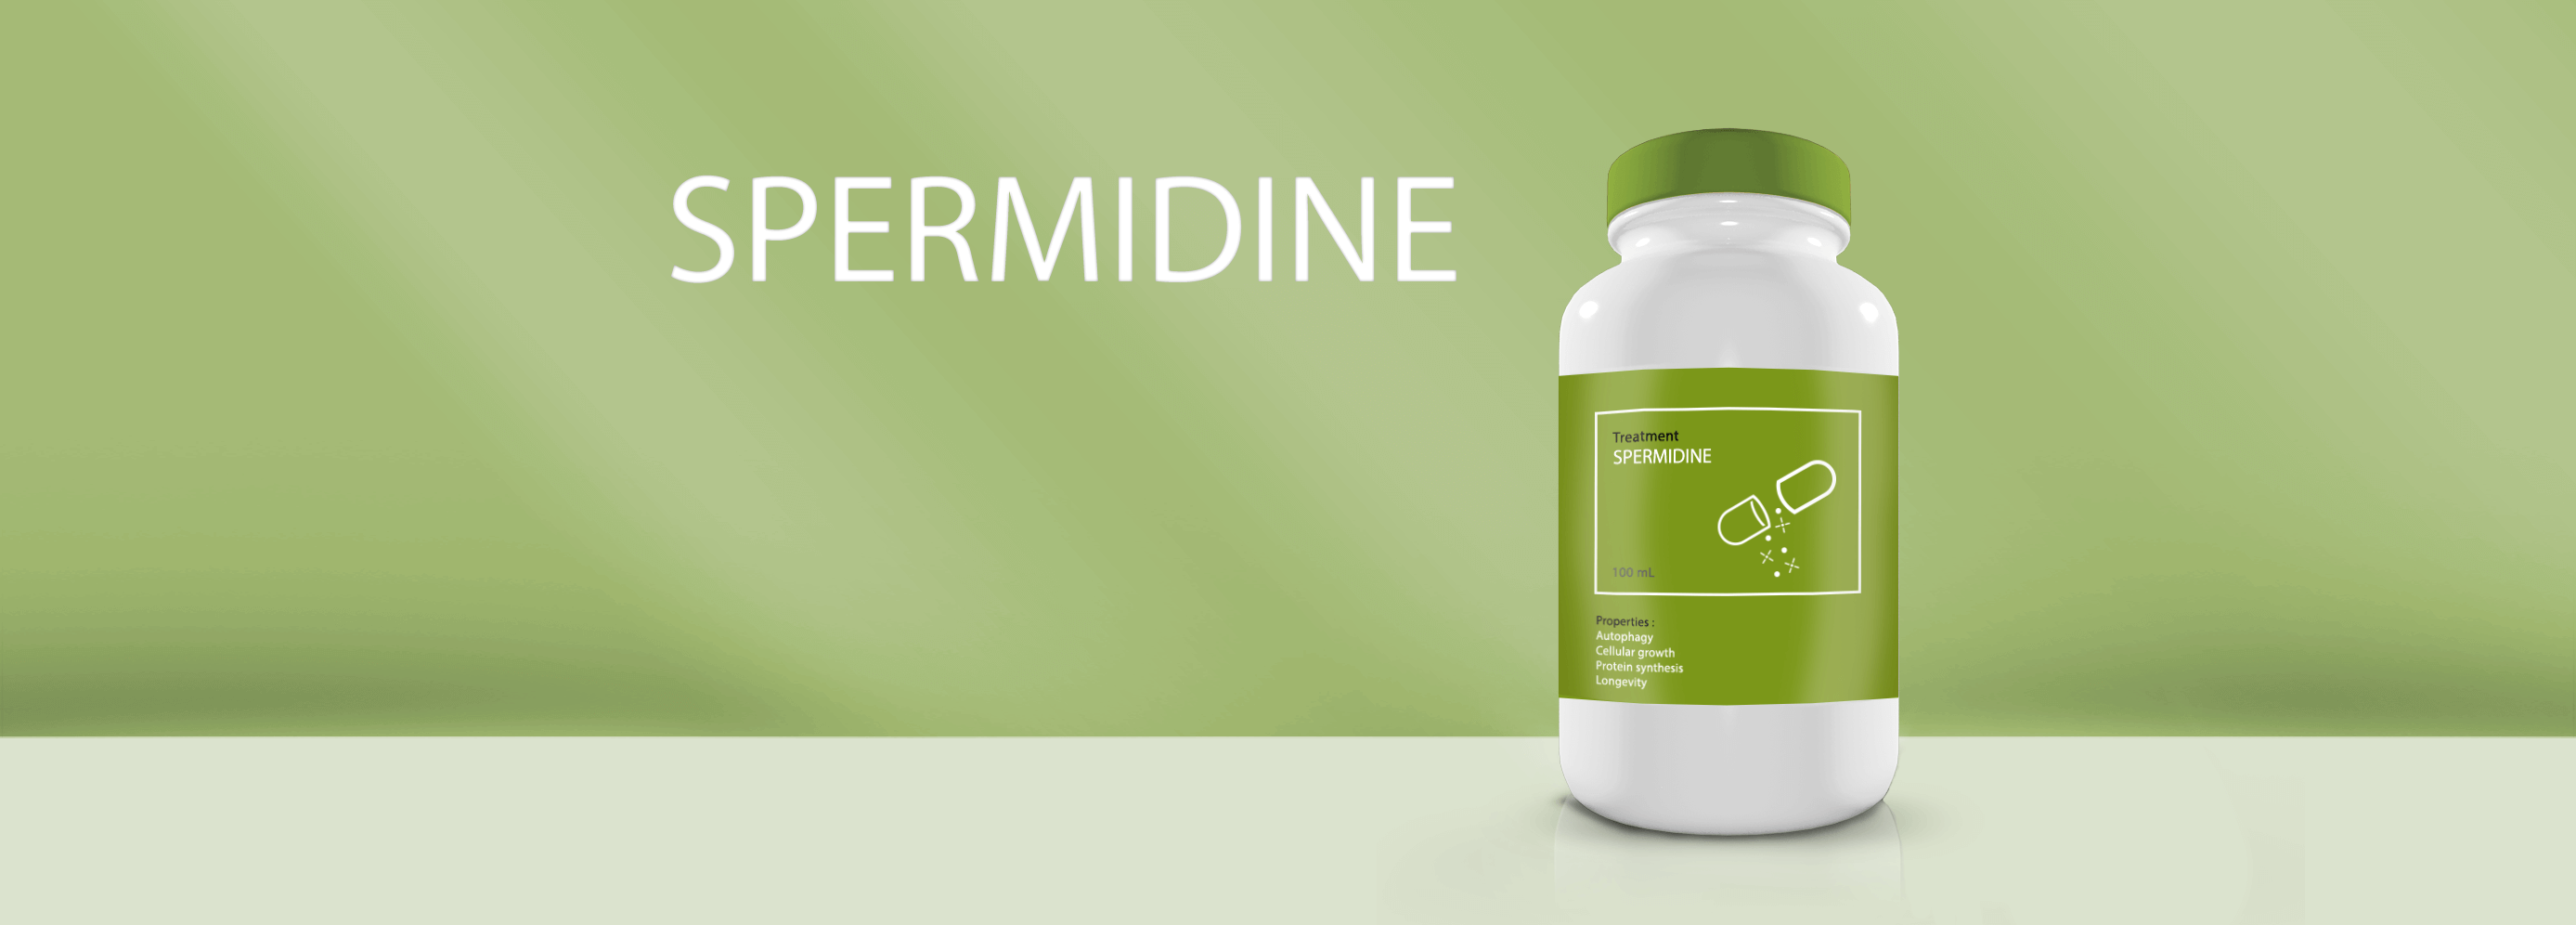 Spermidine is a natural polyamine